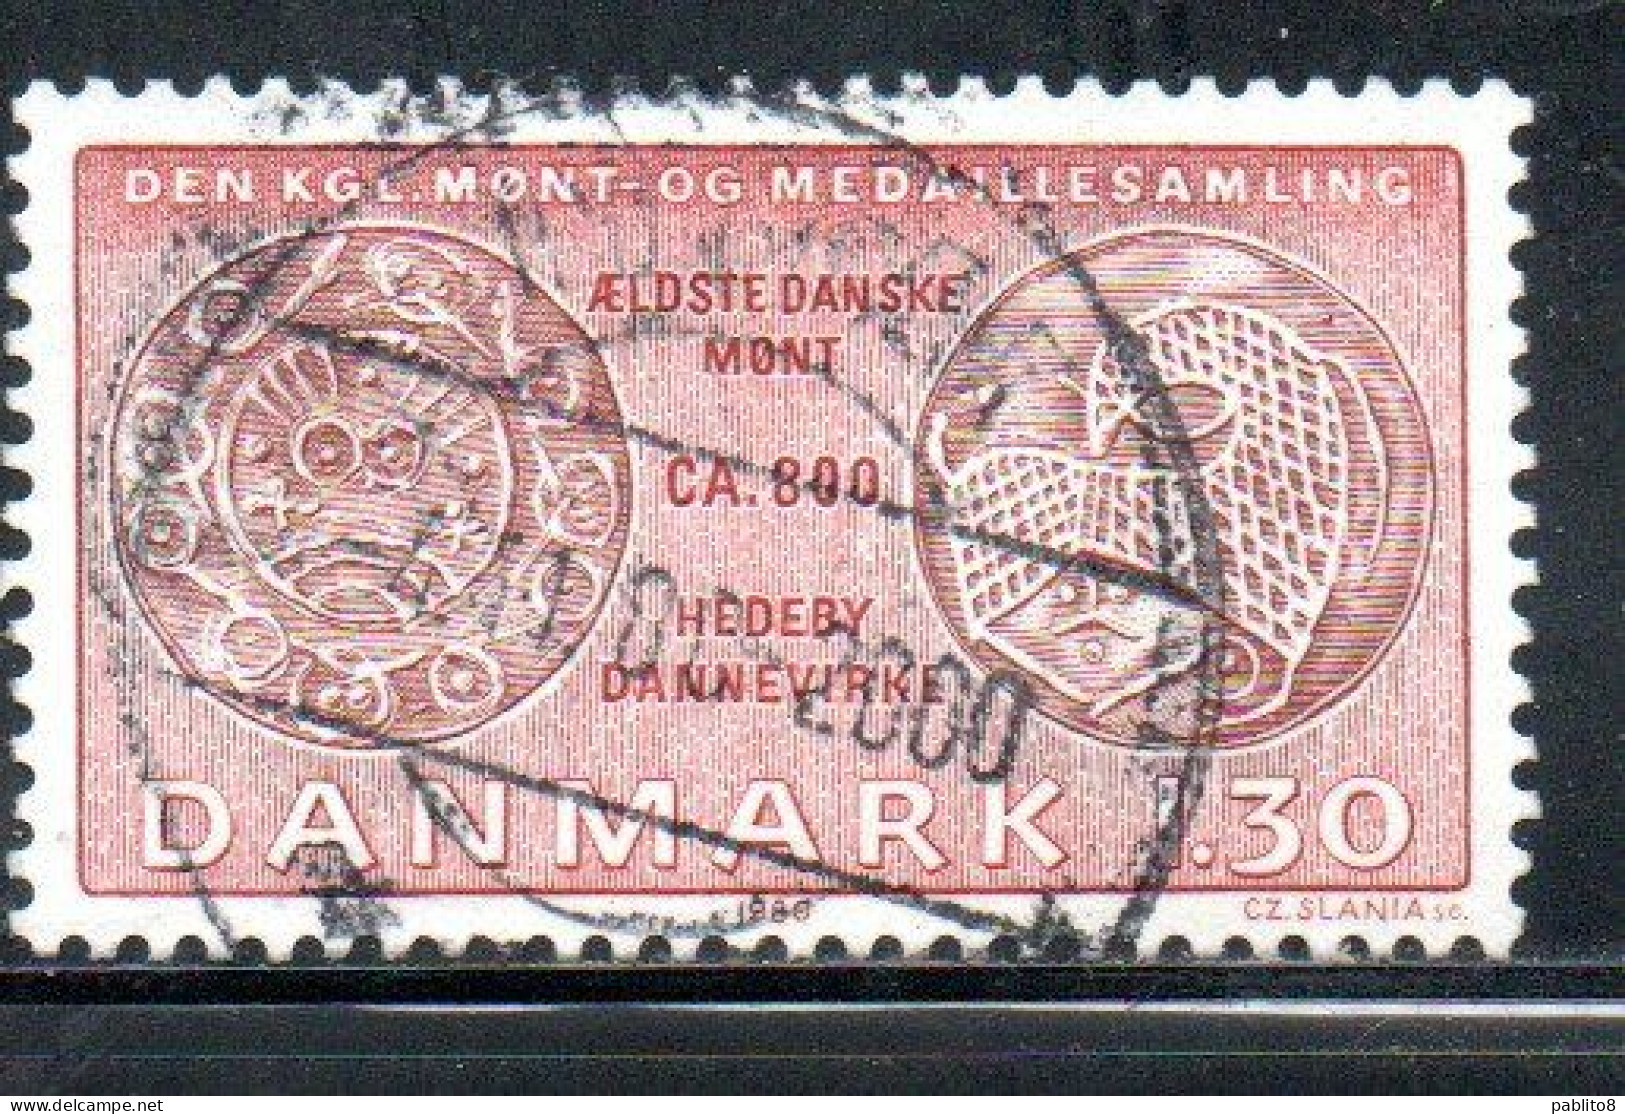 DANEMARK DANMARK DENMARK DANIMARCA 1980 COINS FRISIAN SHEAT FACSIMILE 1.30k USED USATO OBLITERE - Usado